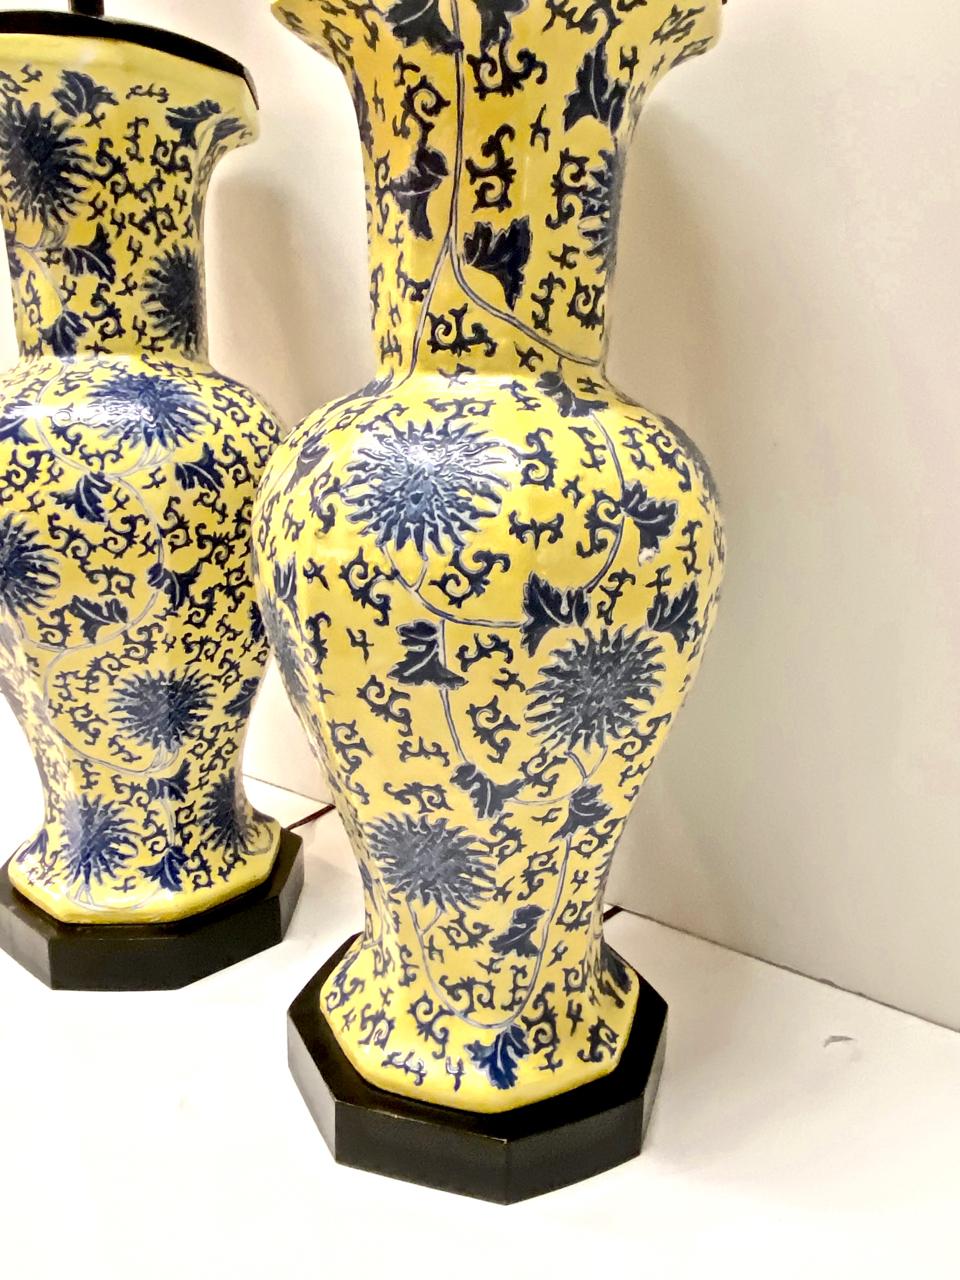 Il s'agit d'une paire exceptionnelle de lampes de table en porcelaine chinoise bleue et jaune datant de la seconde moitié du 20e siècle. Les bases en céramique à 8 côtés sont équipées de socles octogonaux en bois laqué et d'éléments d'éclairage à